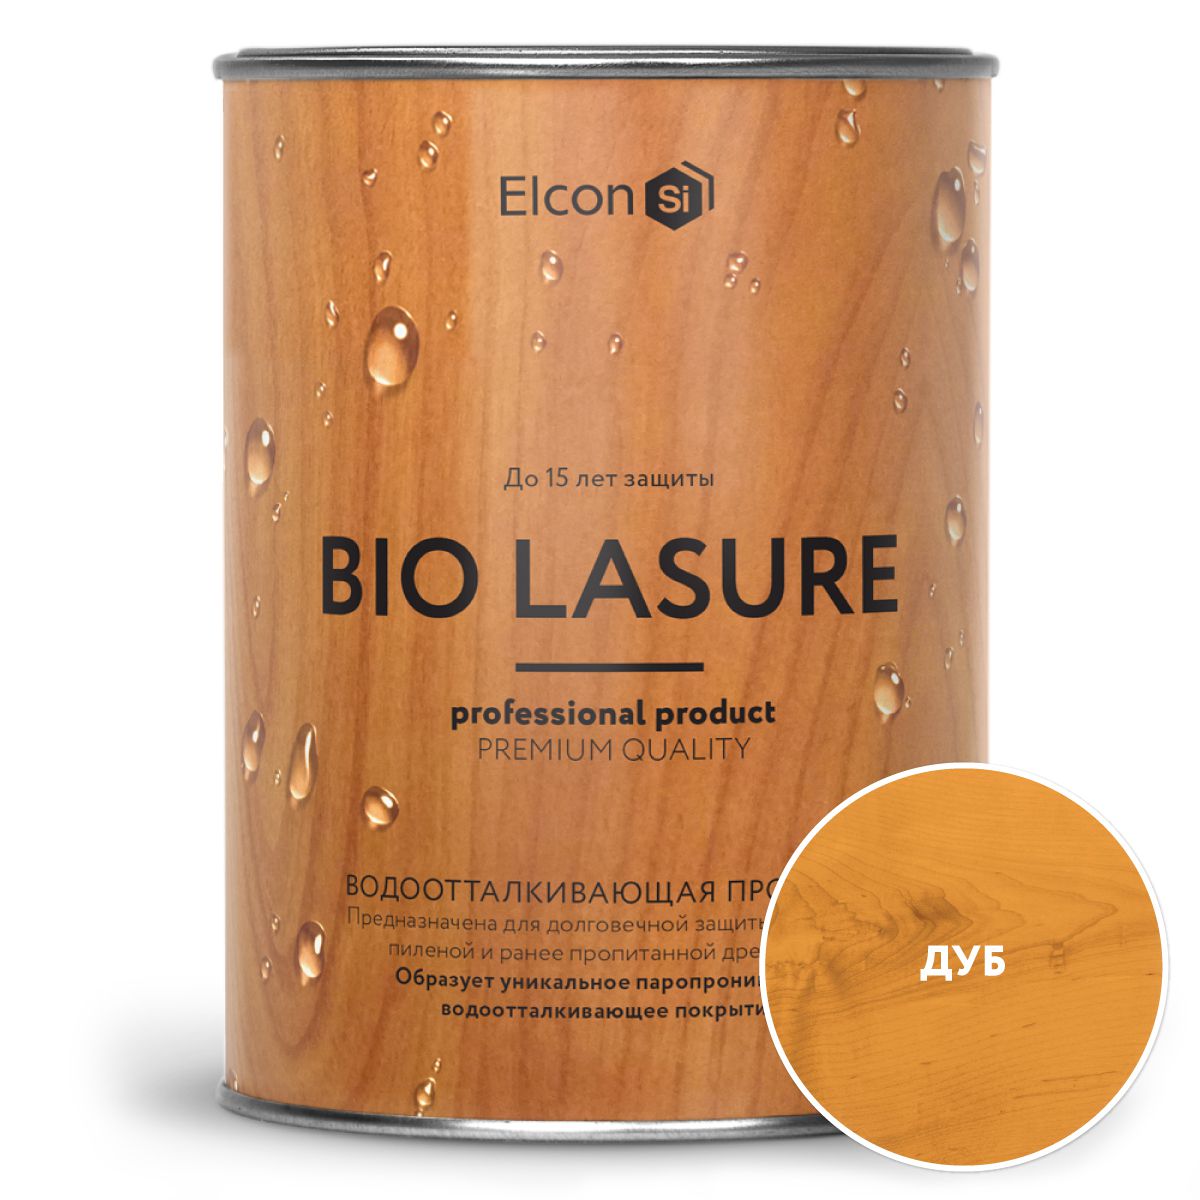 Водоотталкивающая пропитка для защиты дерева, Elcon Bio Lasure, дуб 0,9л пропитка для дерева elcon bio lasure водоотталкивающая осенний клен 9 л